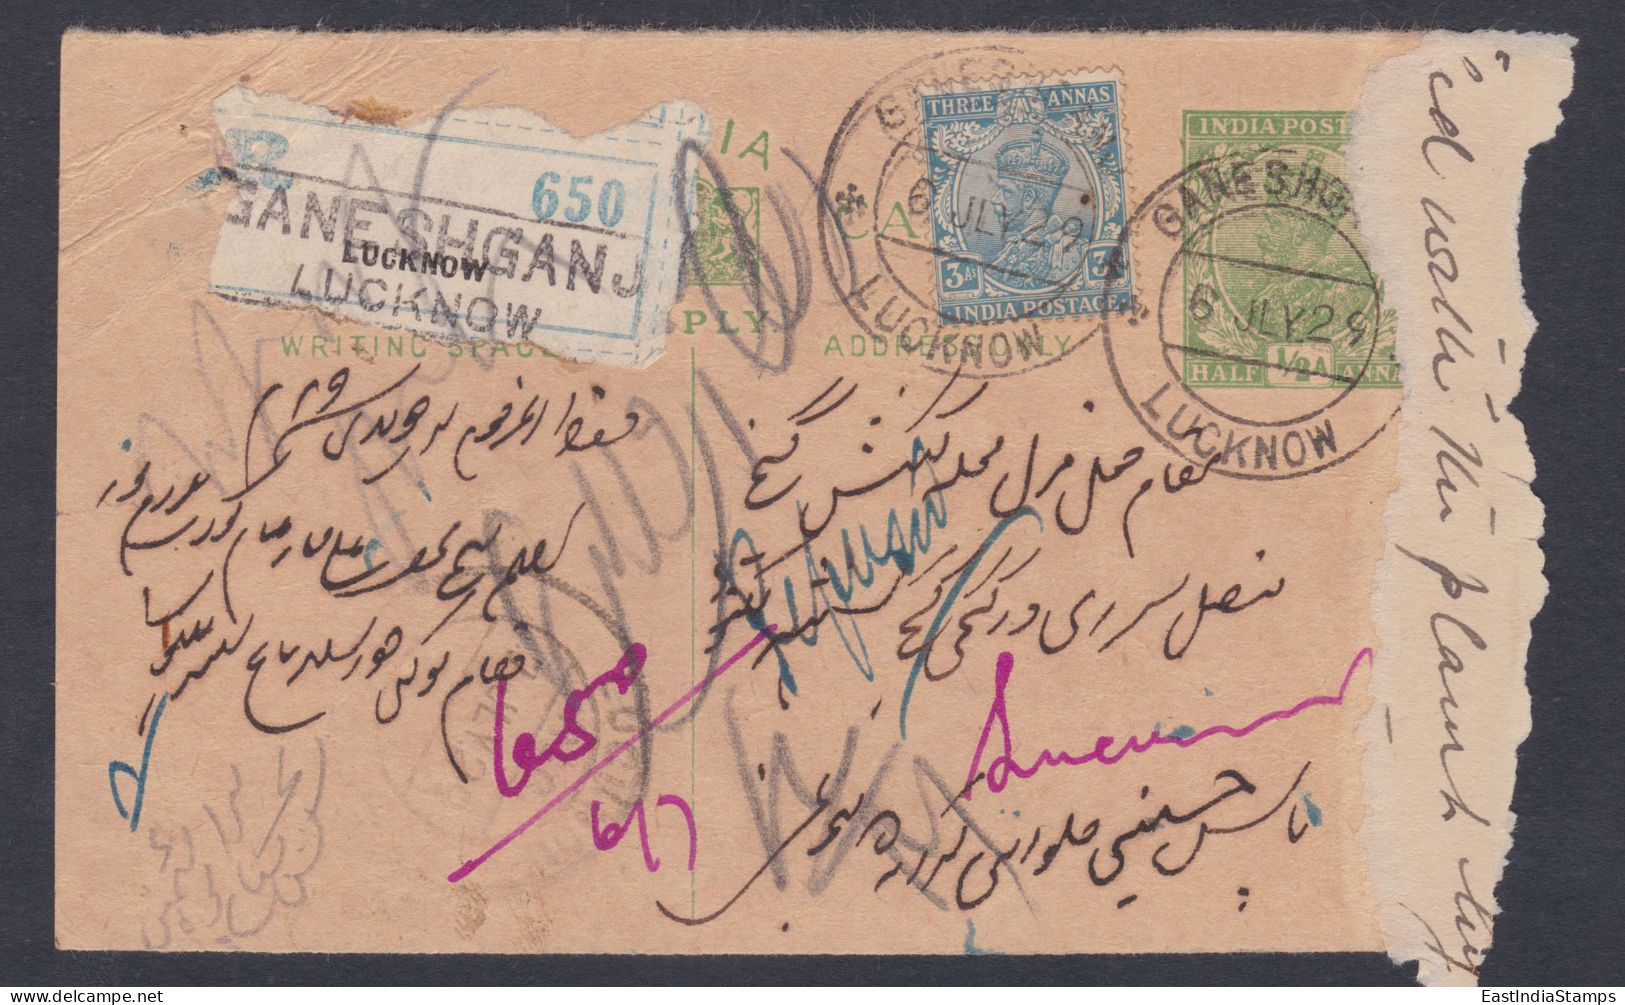 Inde British India 1929 Used Registered King George V Postcard, Refused, Return Mail, Post Card, Postal Stationery - 1911-35 King George V